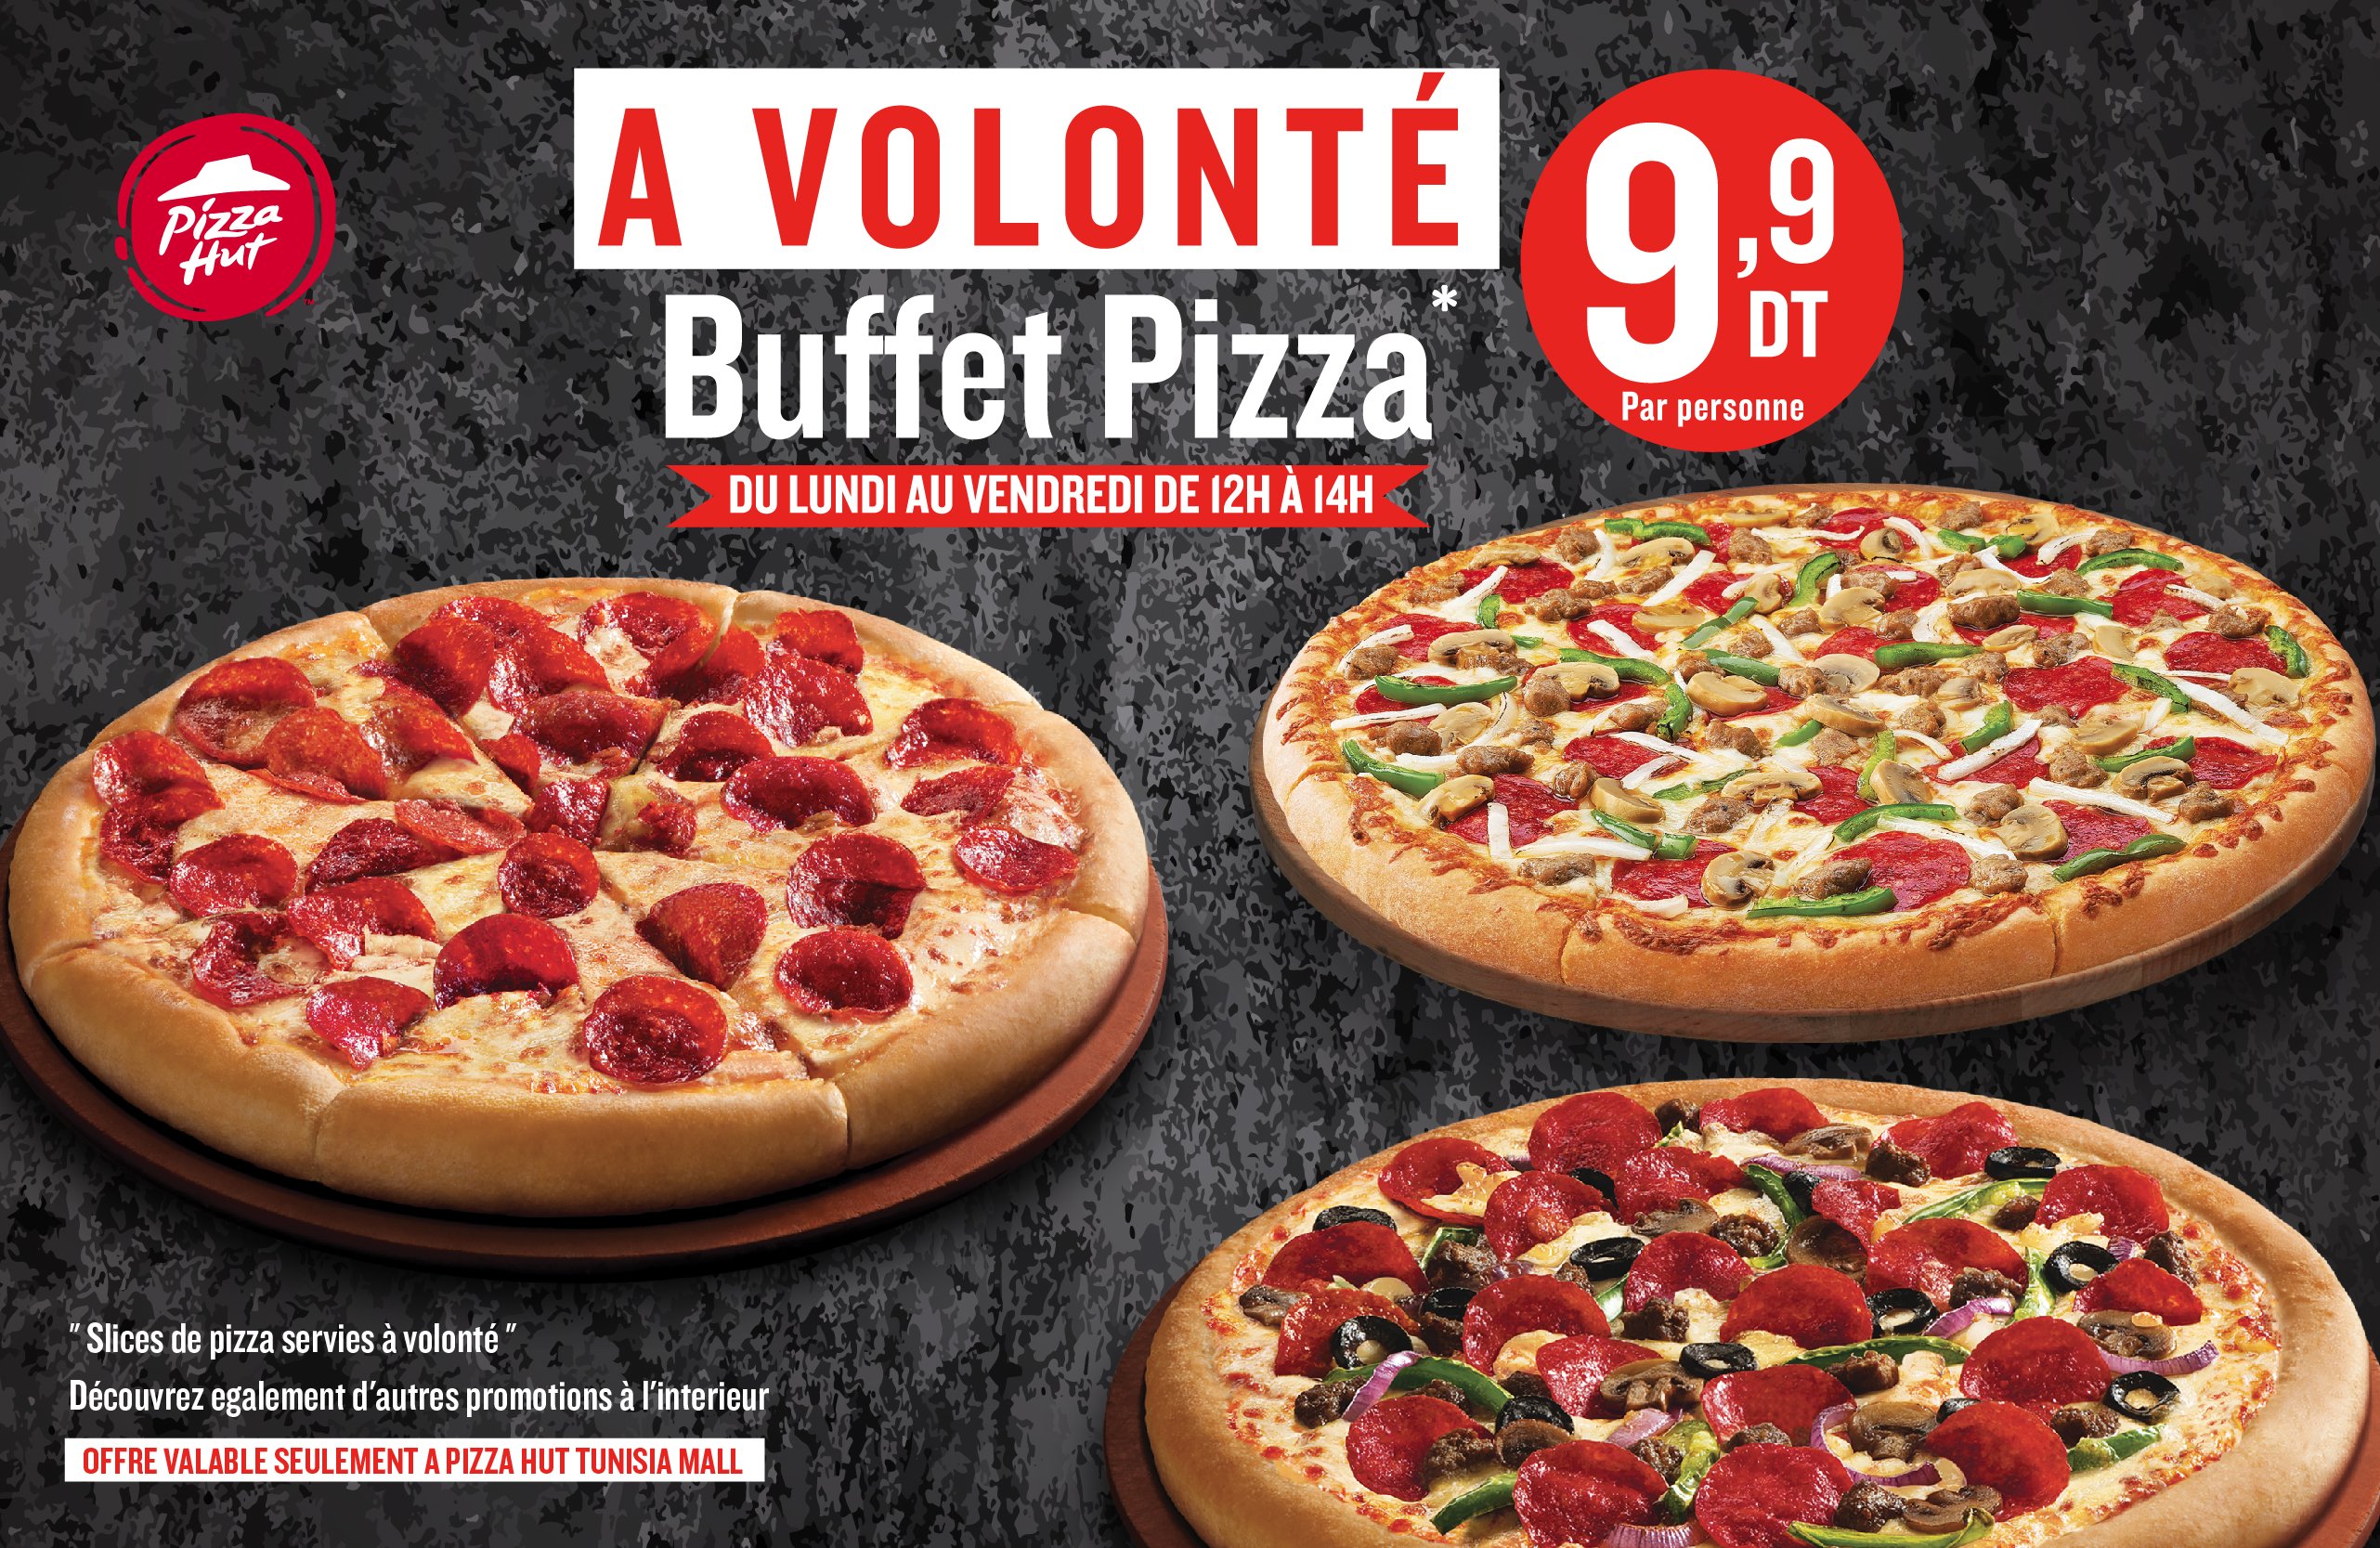 Pizza Hut Tunisia on Twitter: 